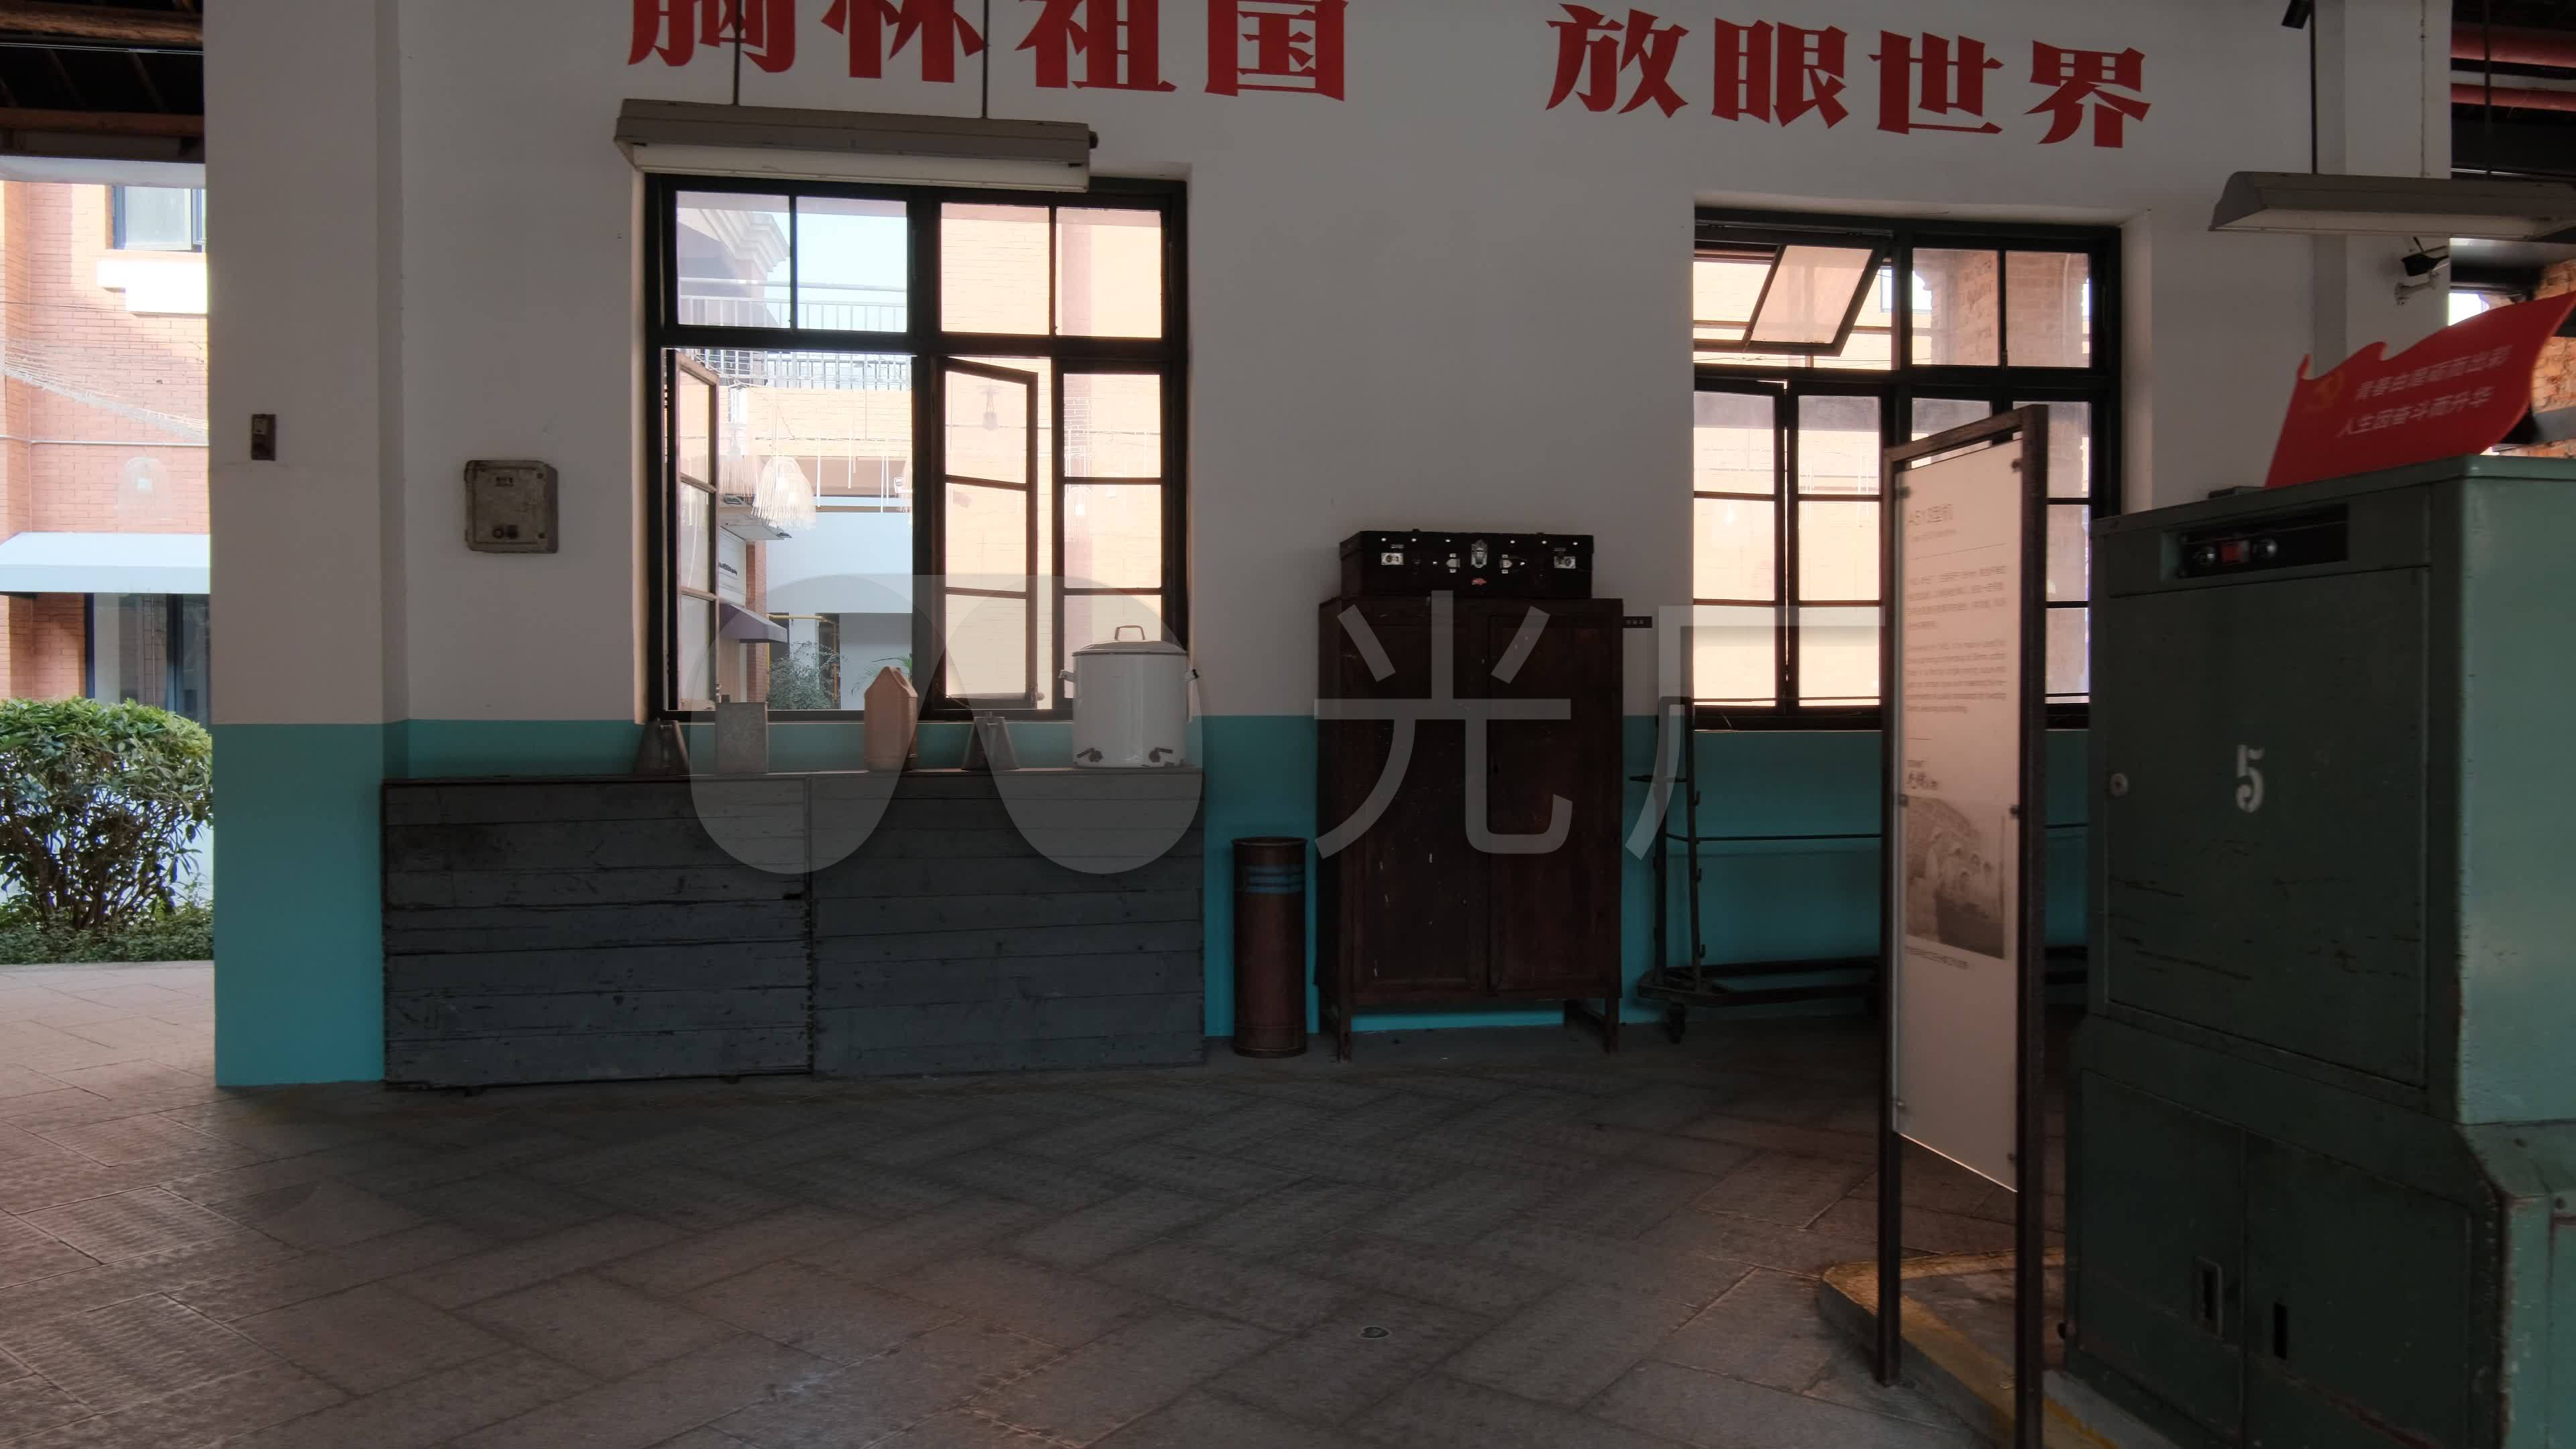 留住老厂记忆的绢麻社区博物馆